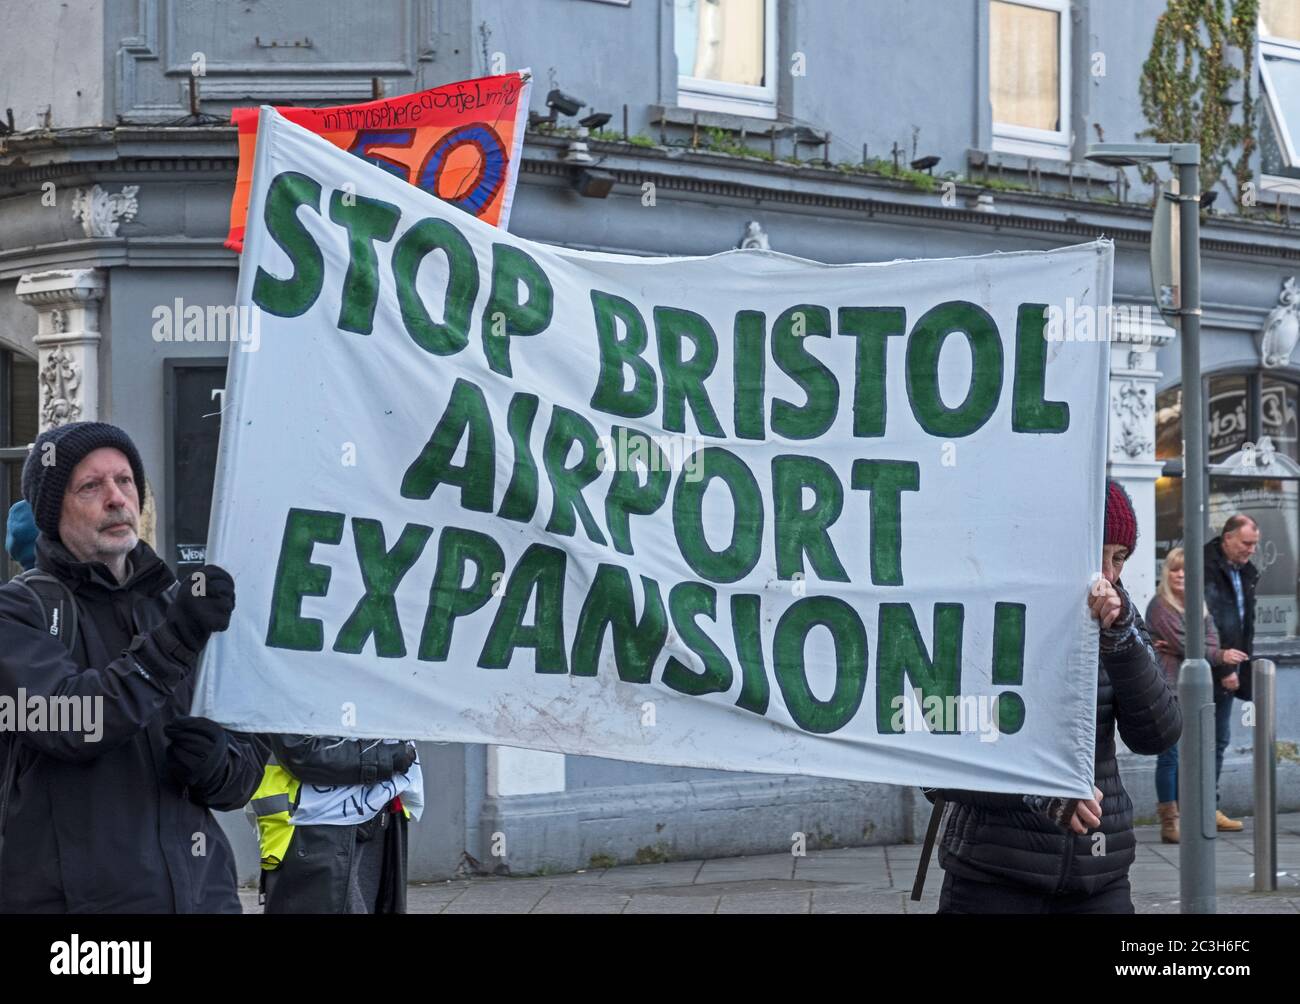 Weston-super-Mare, Regno Unito, 8 febbraio 2020. I manifestanti protestano contro la prevista espansione dell’aeroporto di Bristol in vista di una riunione del comitato di pianificazione e regolamentazione del Consiglio del North Somerset il 10 febbraio, che deciderà se approvare l’espansione. Foto Stock